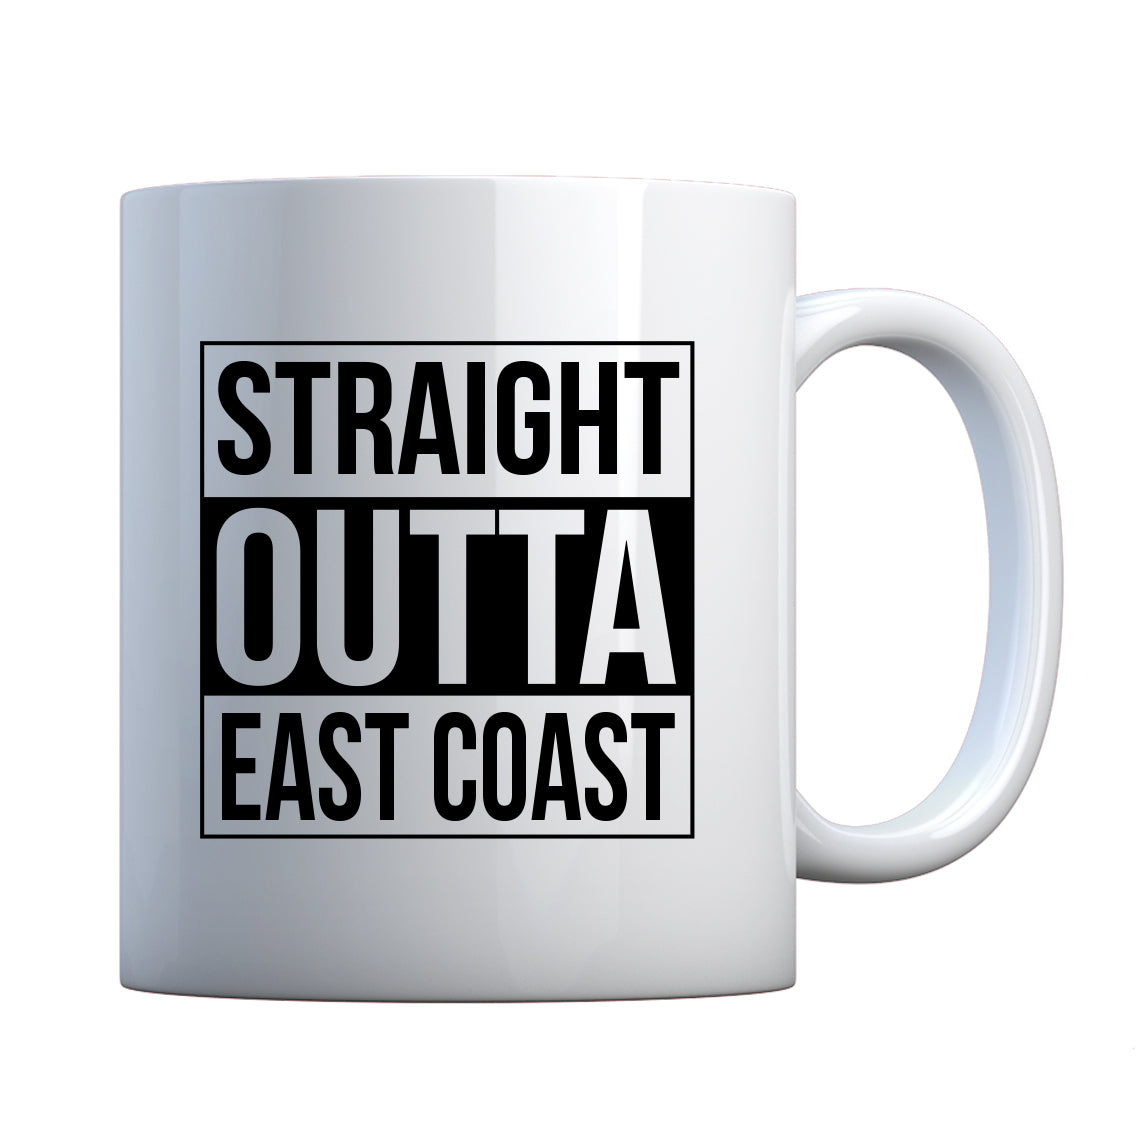 Straight Outta East Coast Ceramic Gift Mug